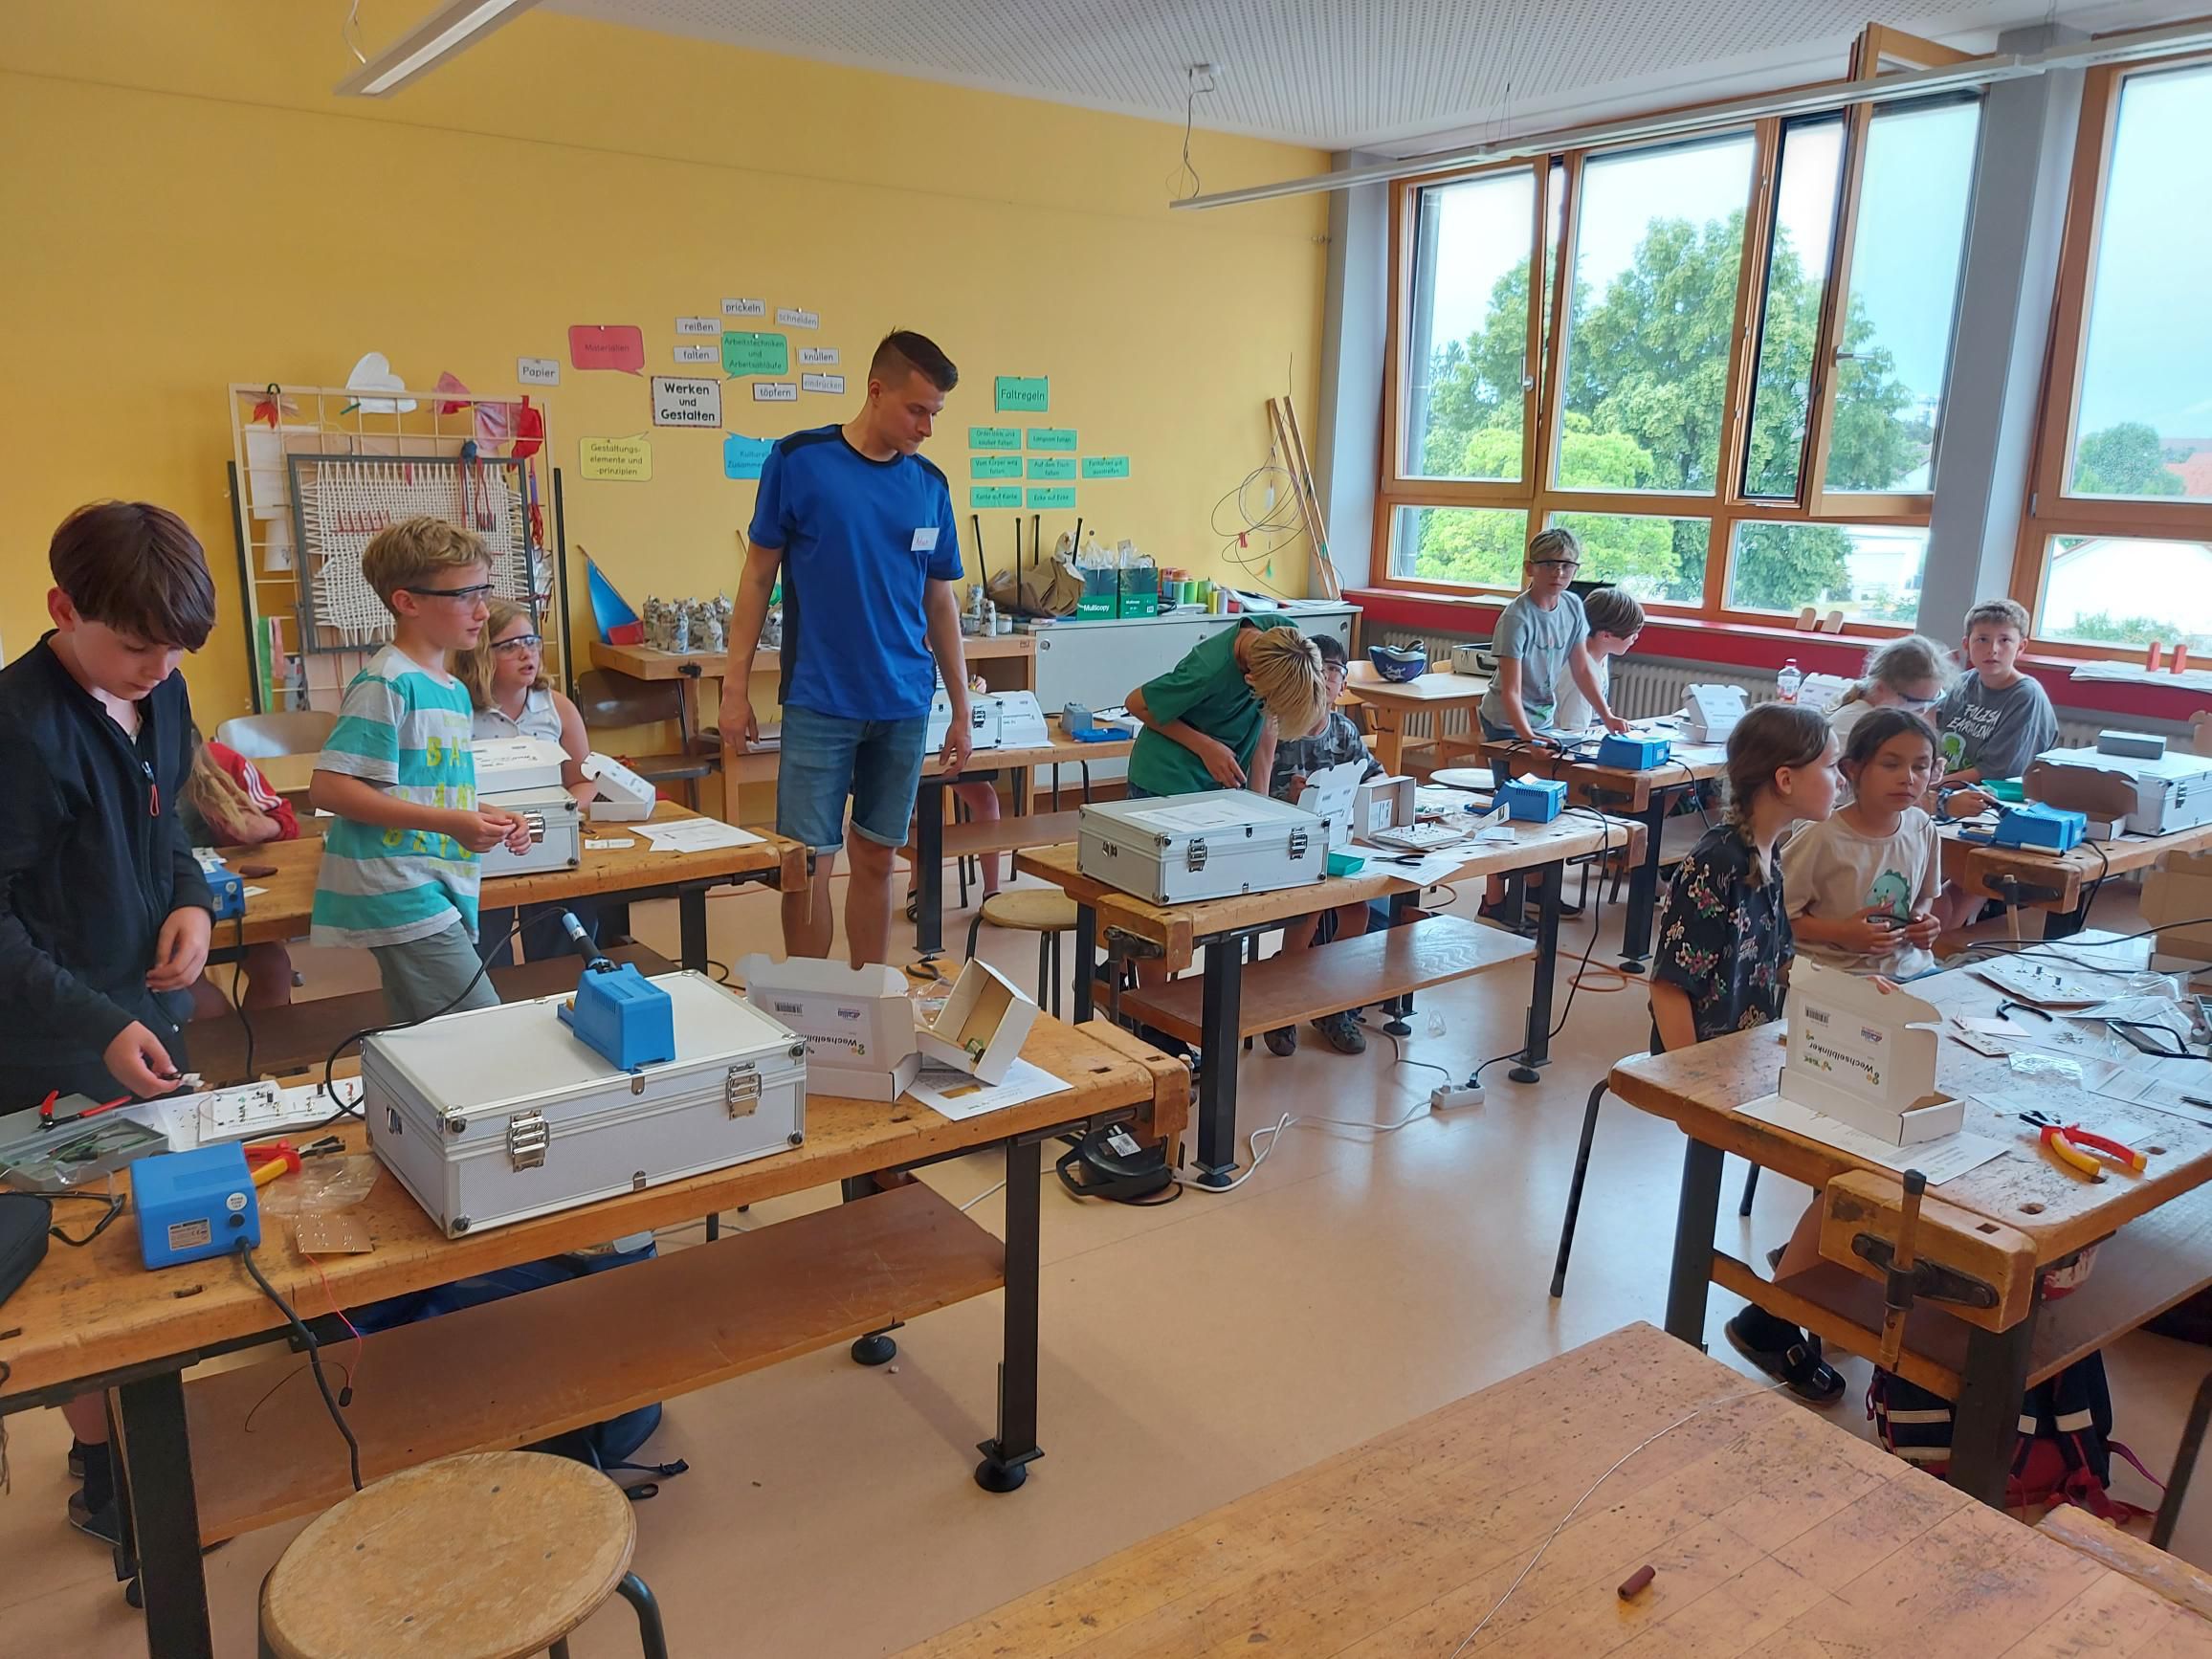 SET - SCHÜLER ENTDECKEN TECHNIK an der Grundschule Sünching